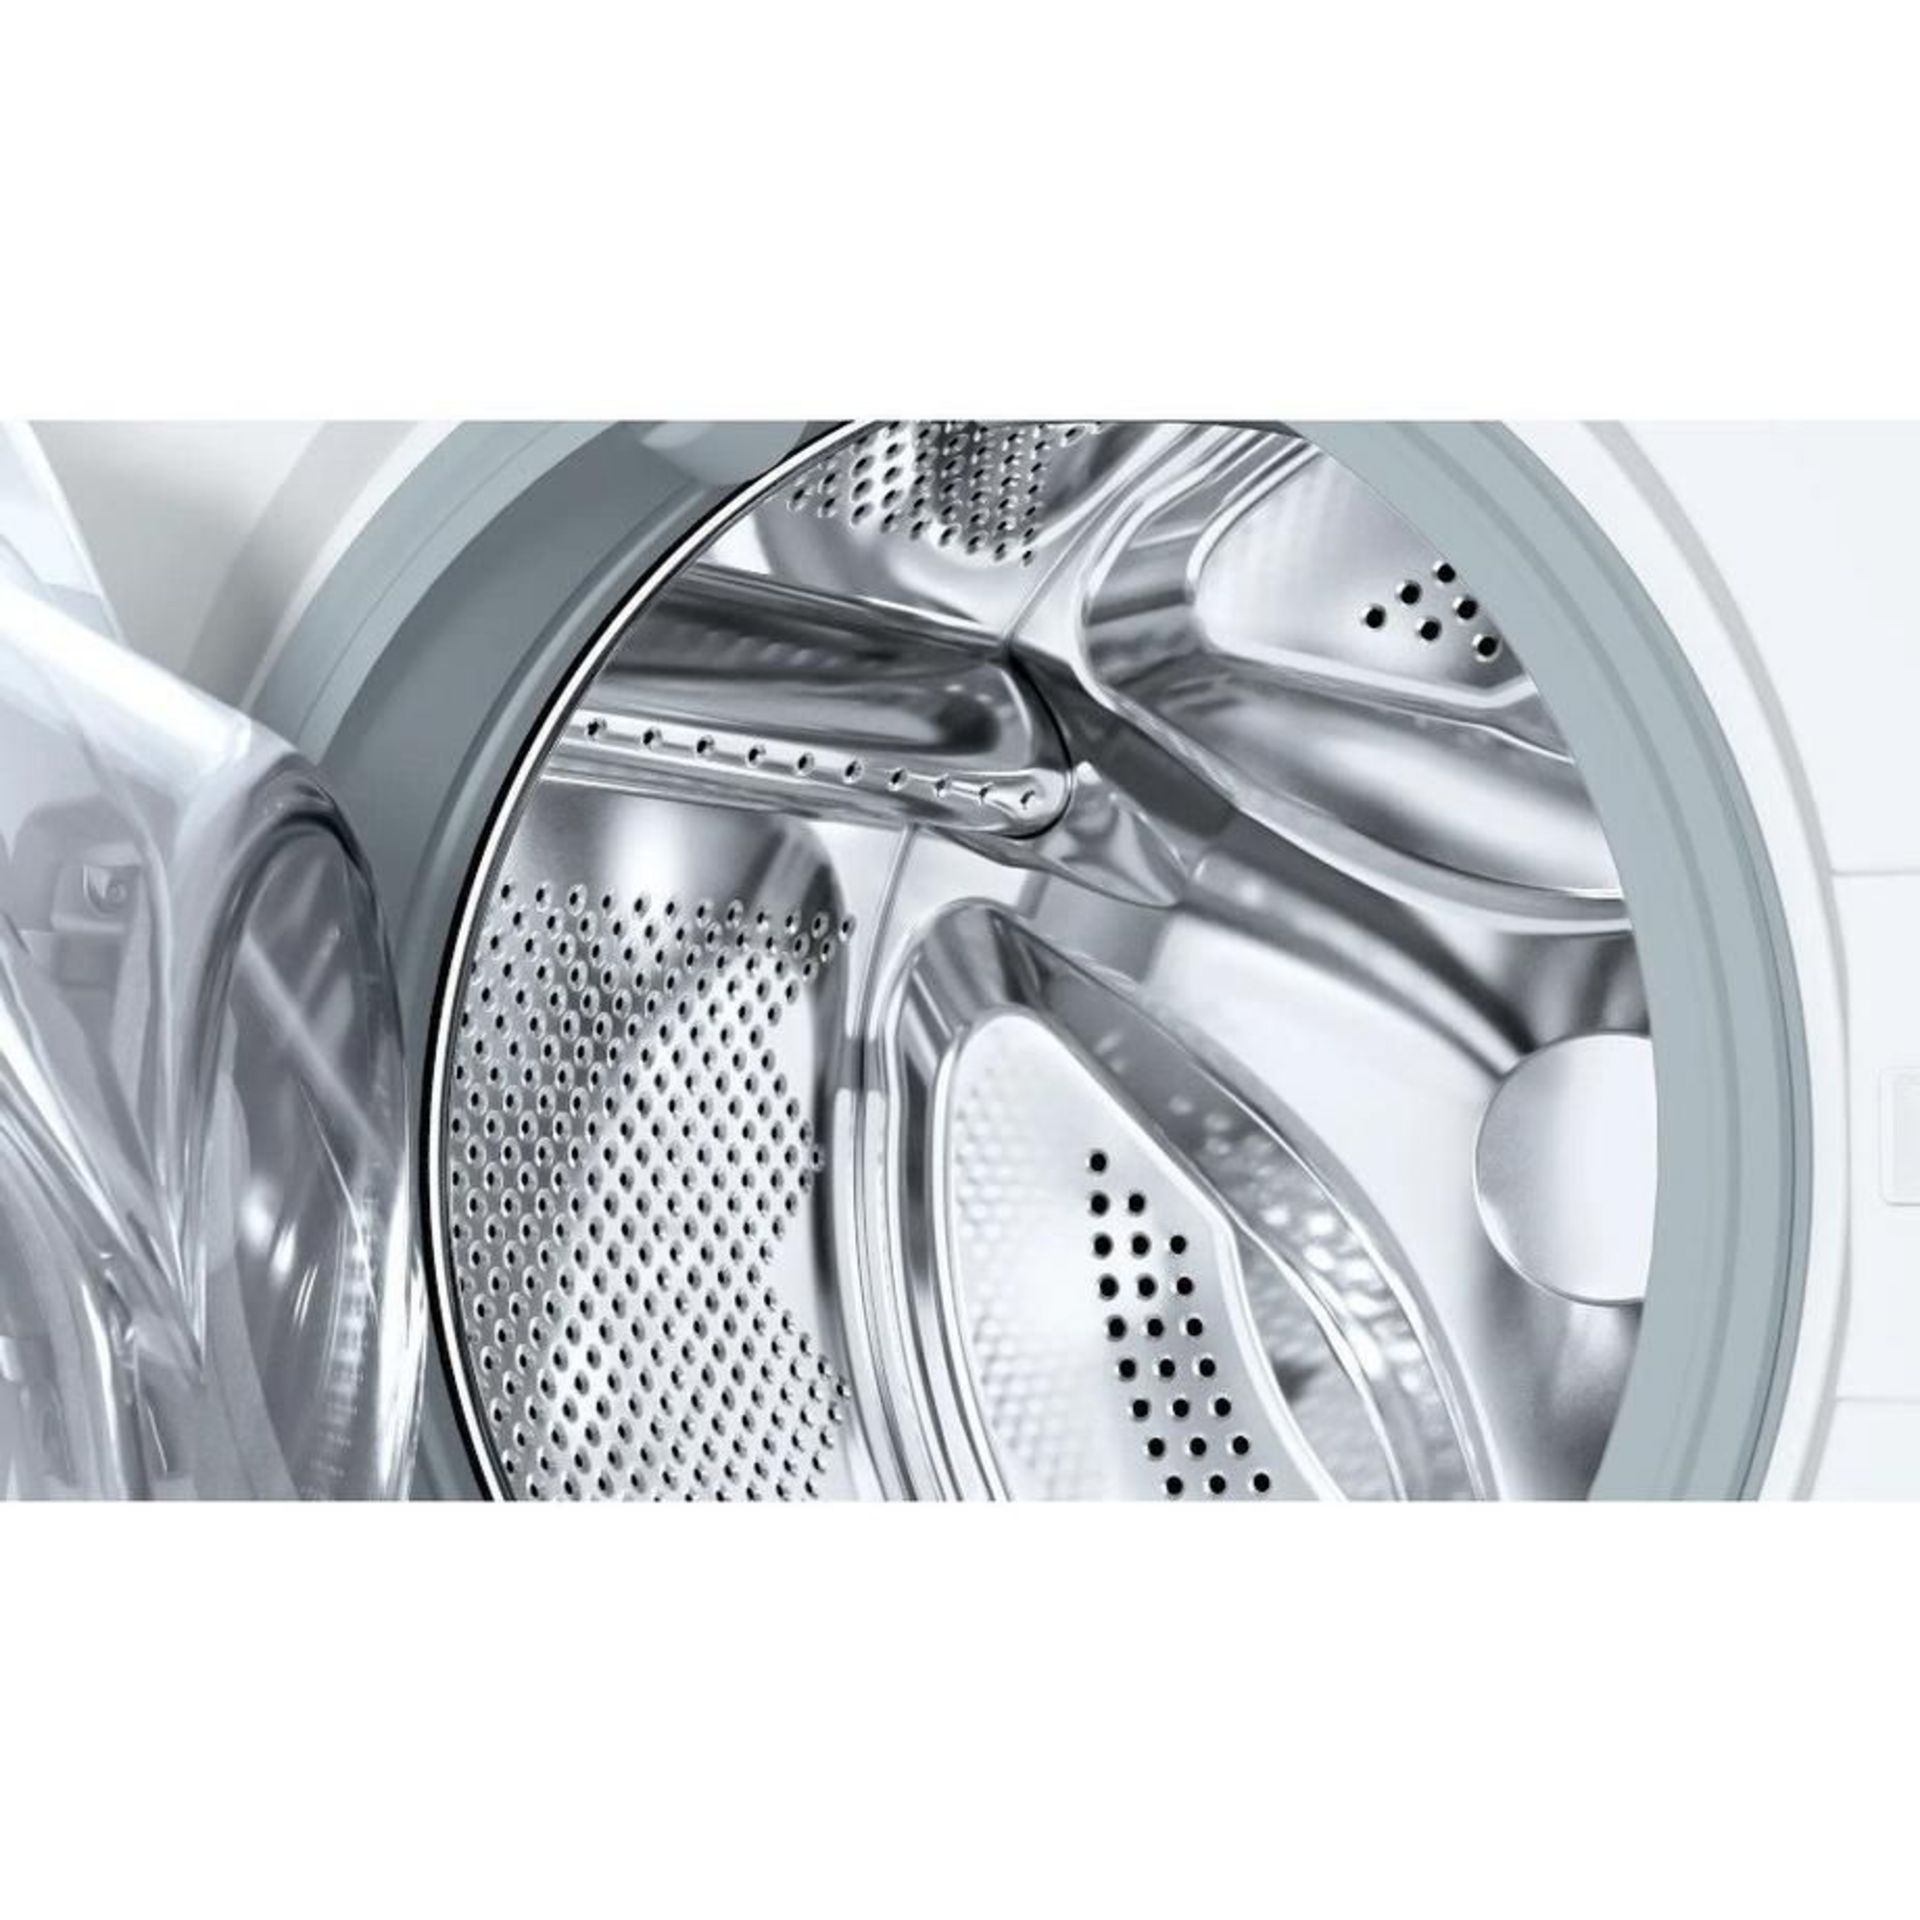 Siemens WK14D542GB 7kg/4kg 1400 Spin Integrated Washer Dryer - White. - H/S. RRP £1,200.00. Get - Bild 2 aus 2